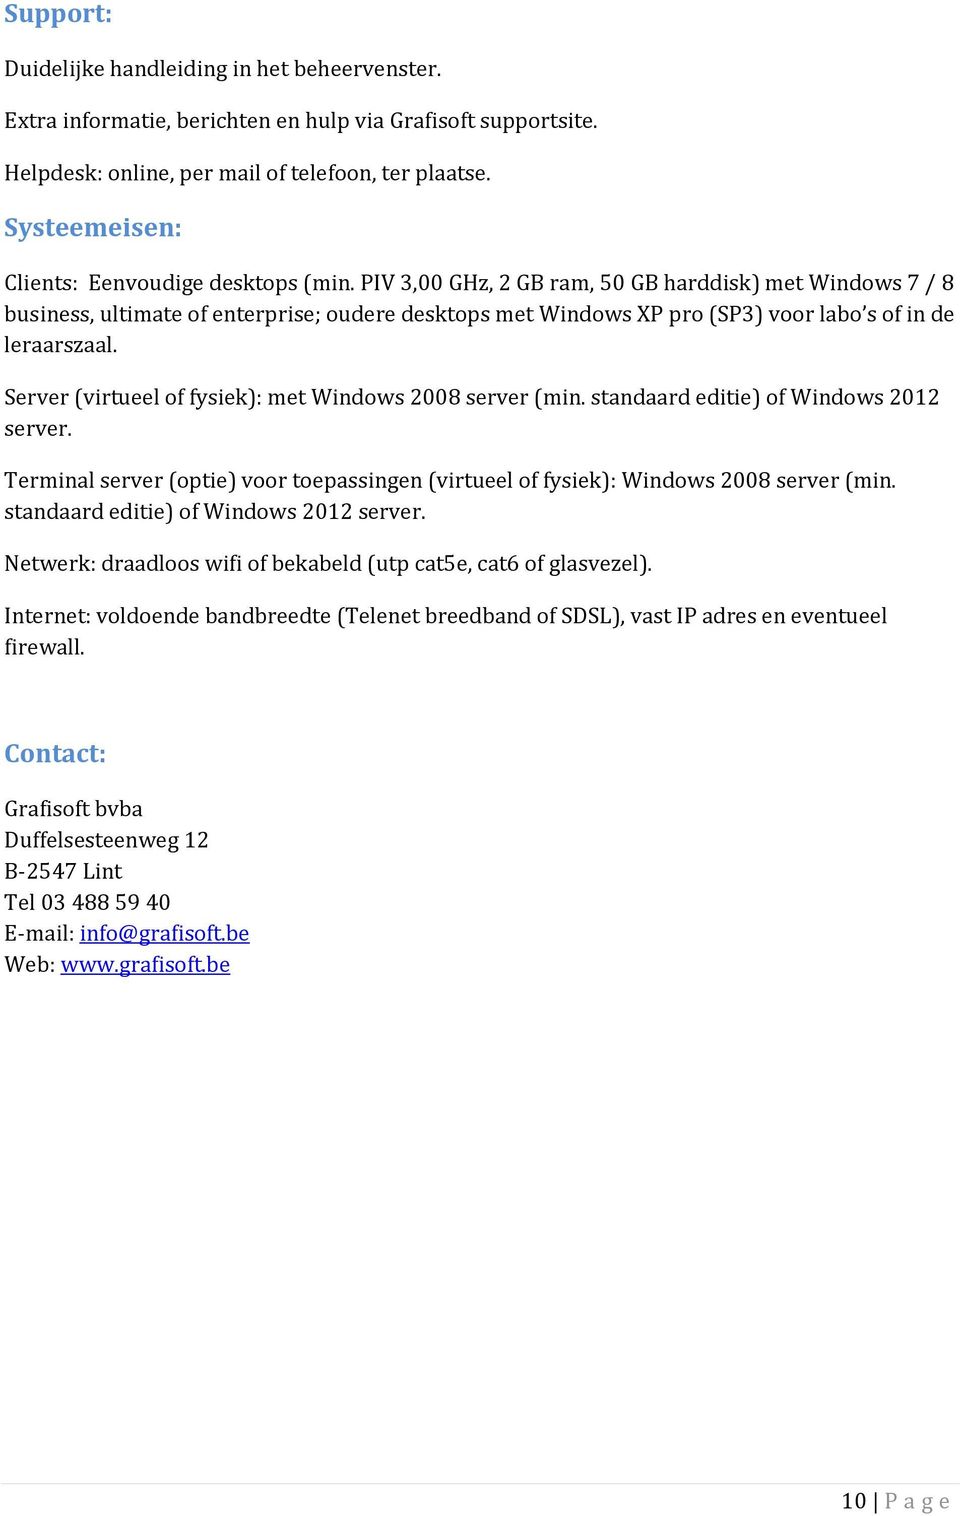 PIV 3,00 GHz, 2 GB ram, 50 GB harddisk) met Windows 7 / 8 business, ultimate of enterprise; oudere desktops met Windows XP pro (SP3) voor labo s of in de leraarszaal.